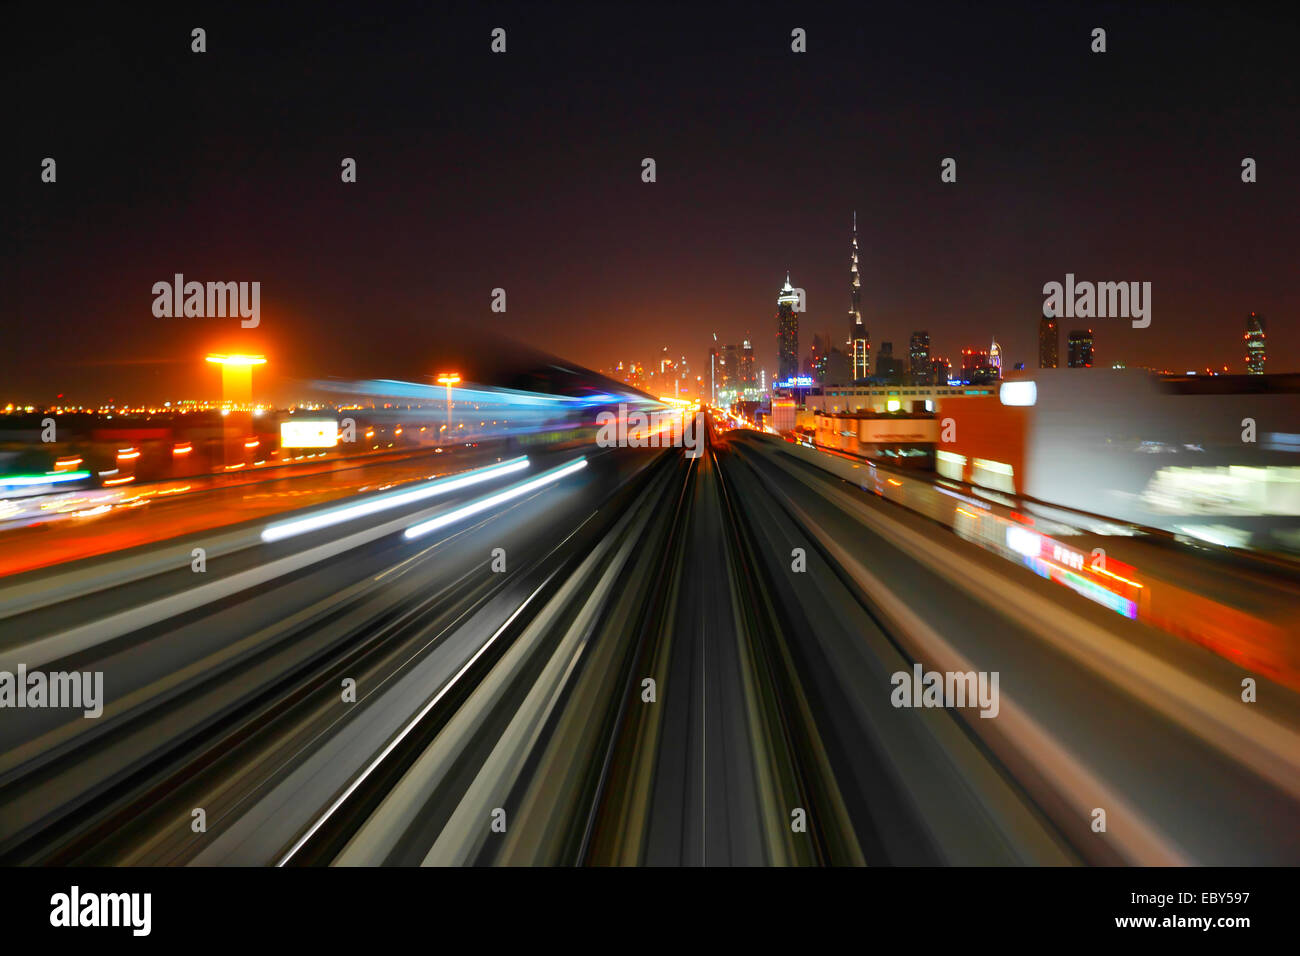 Dubai Metro by night Stock Photo